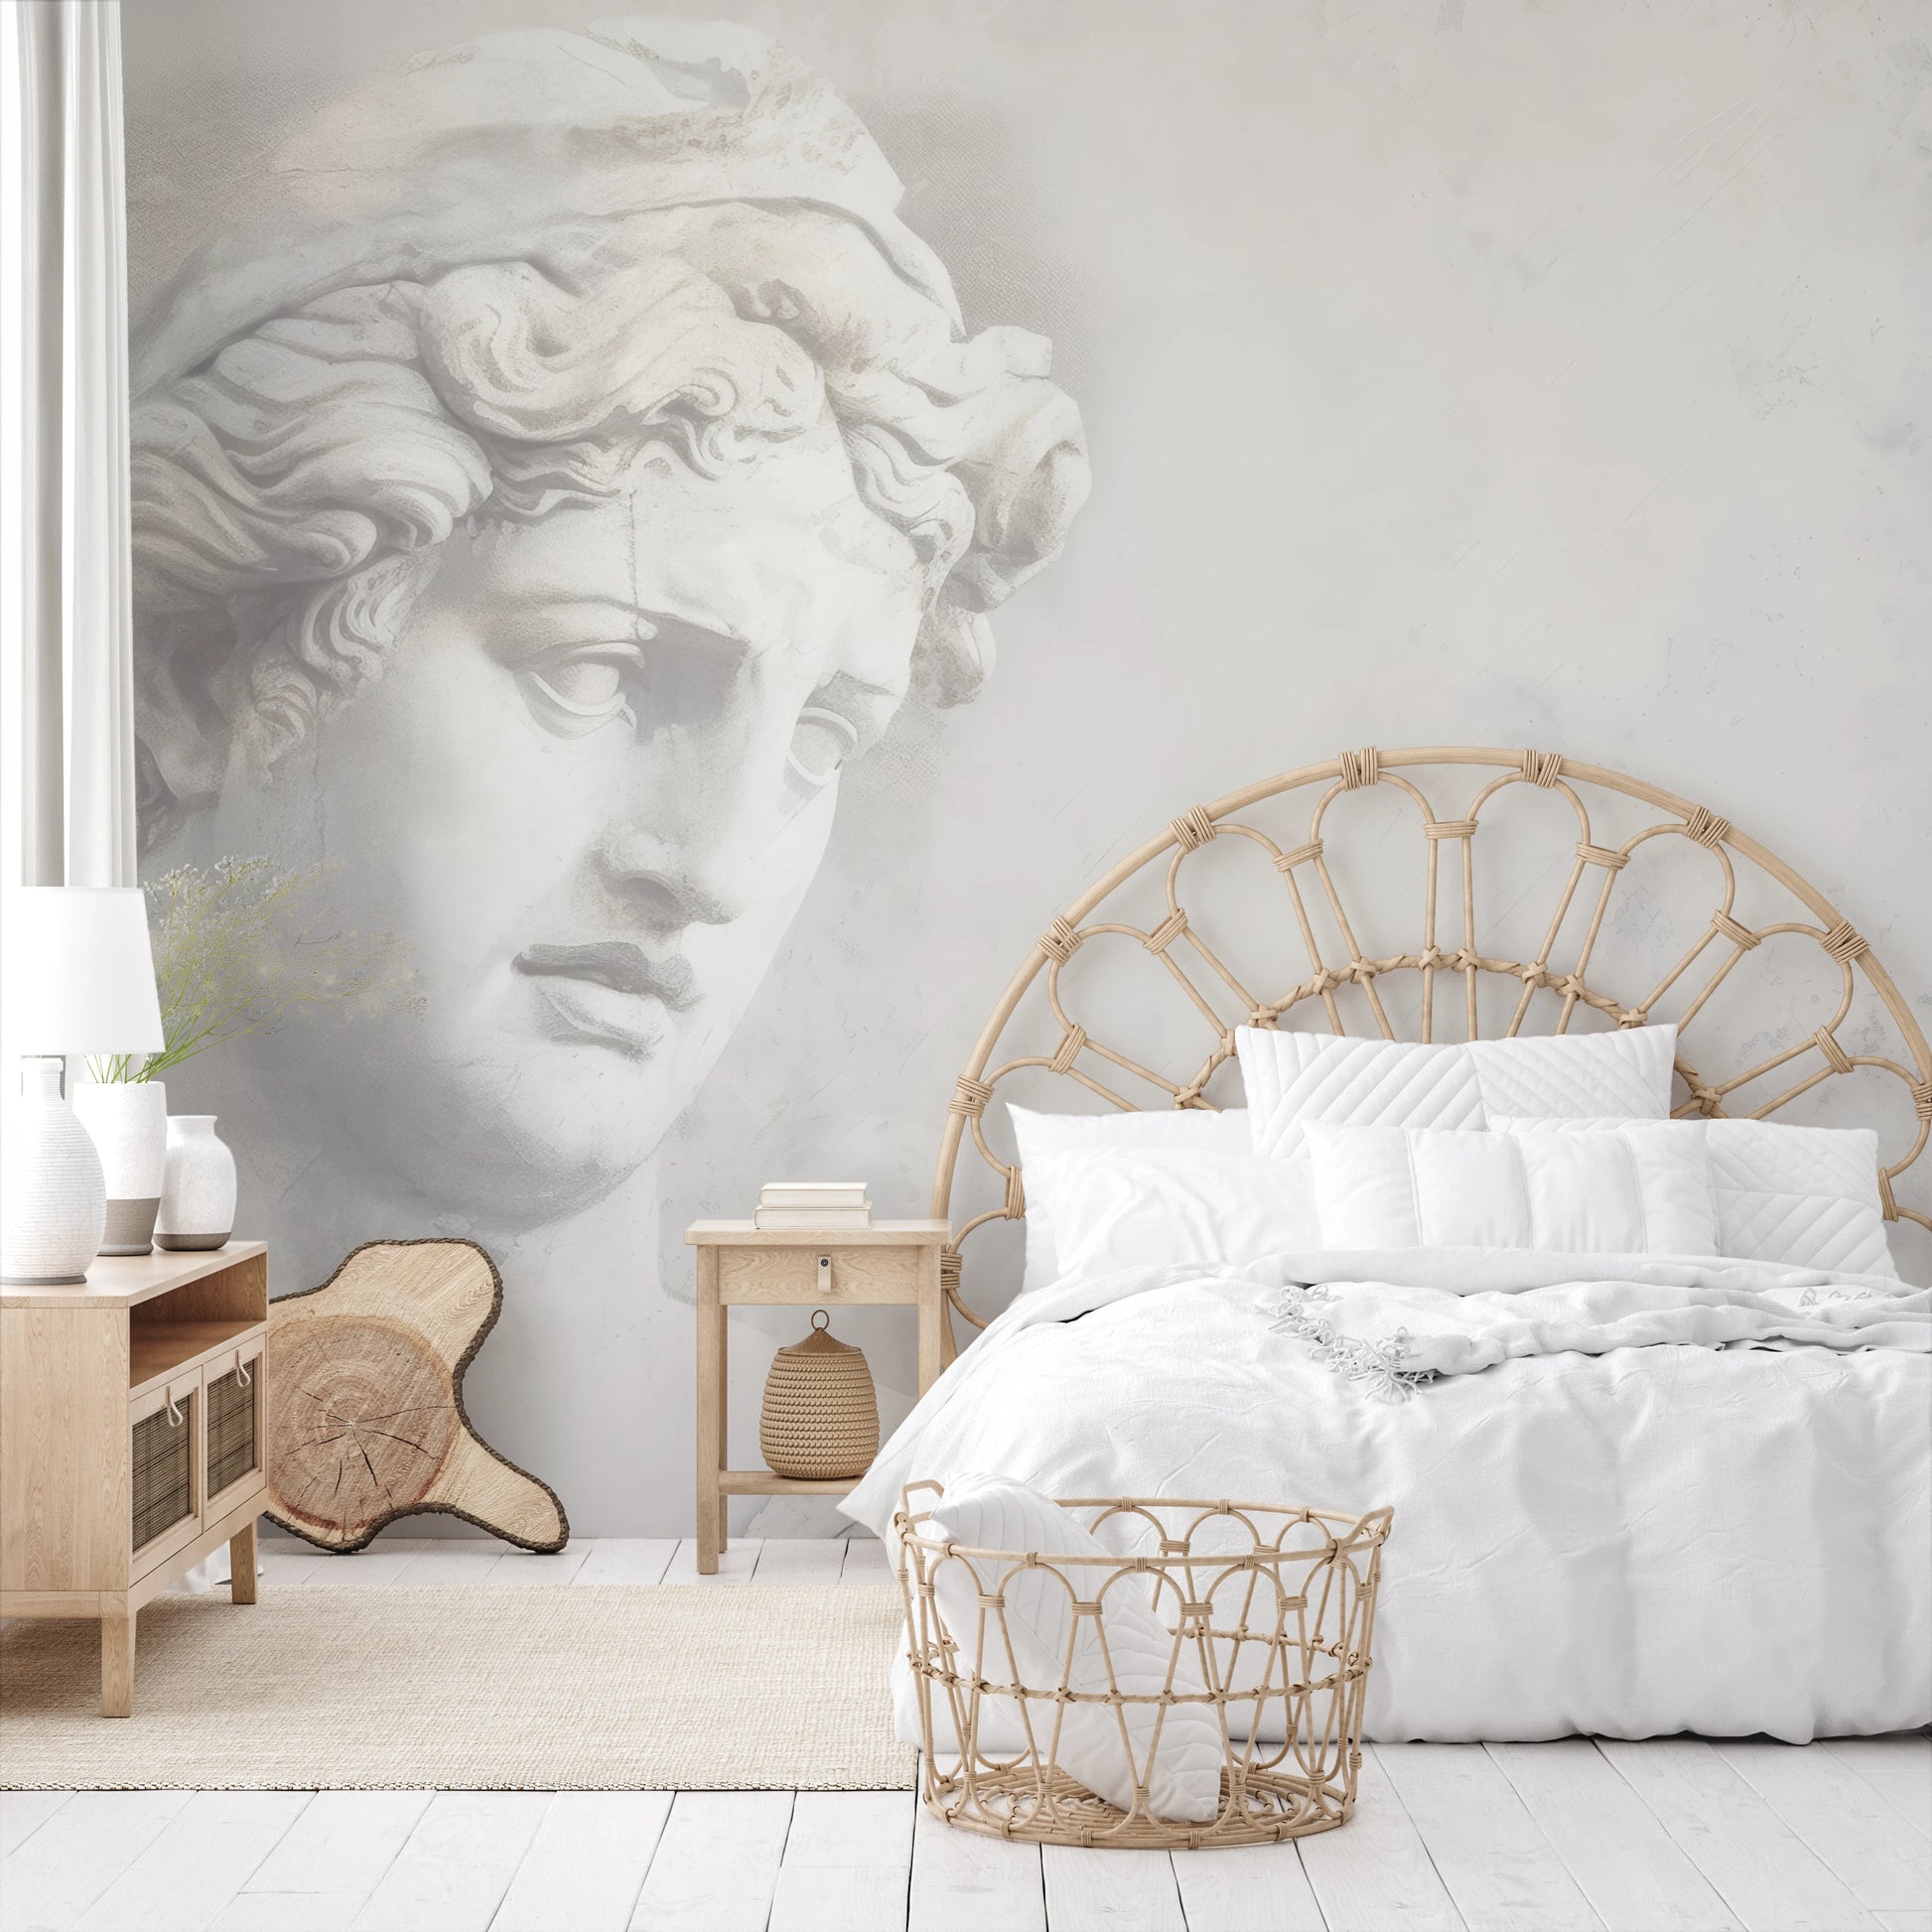 Wzór fototapety malowanej o nazwie Athena's Wisdom pokazanej w aranżacji wnętrza.